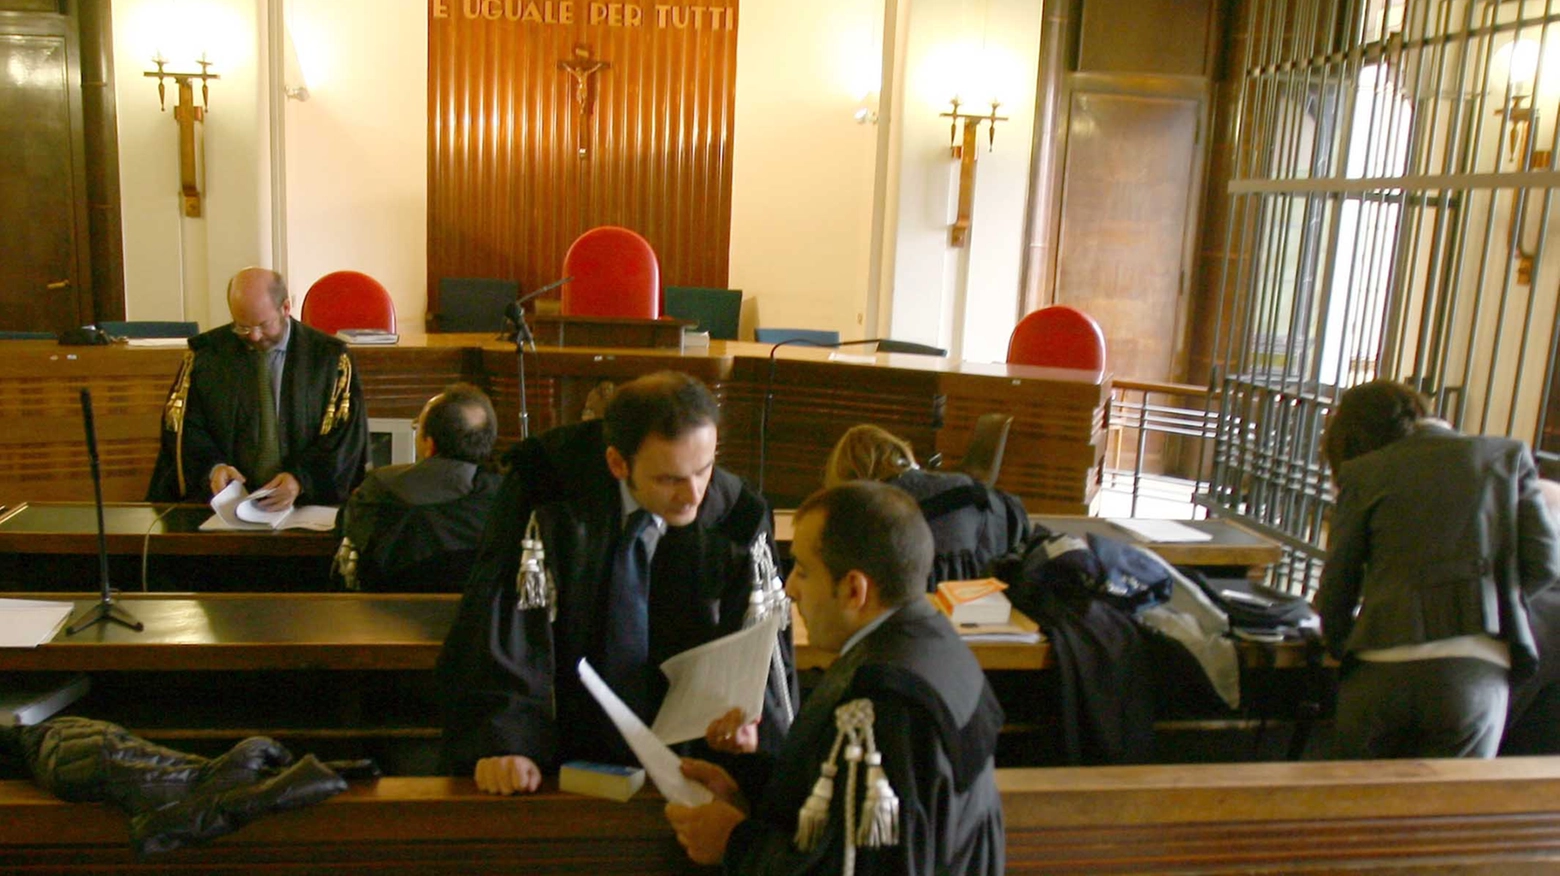 Avvocati in Tribunale